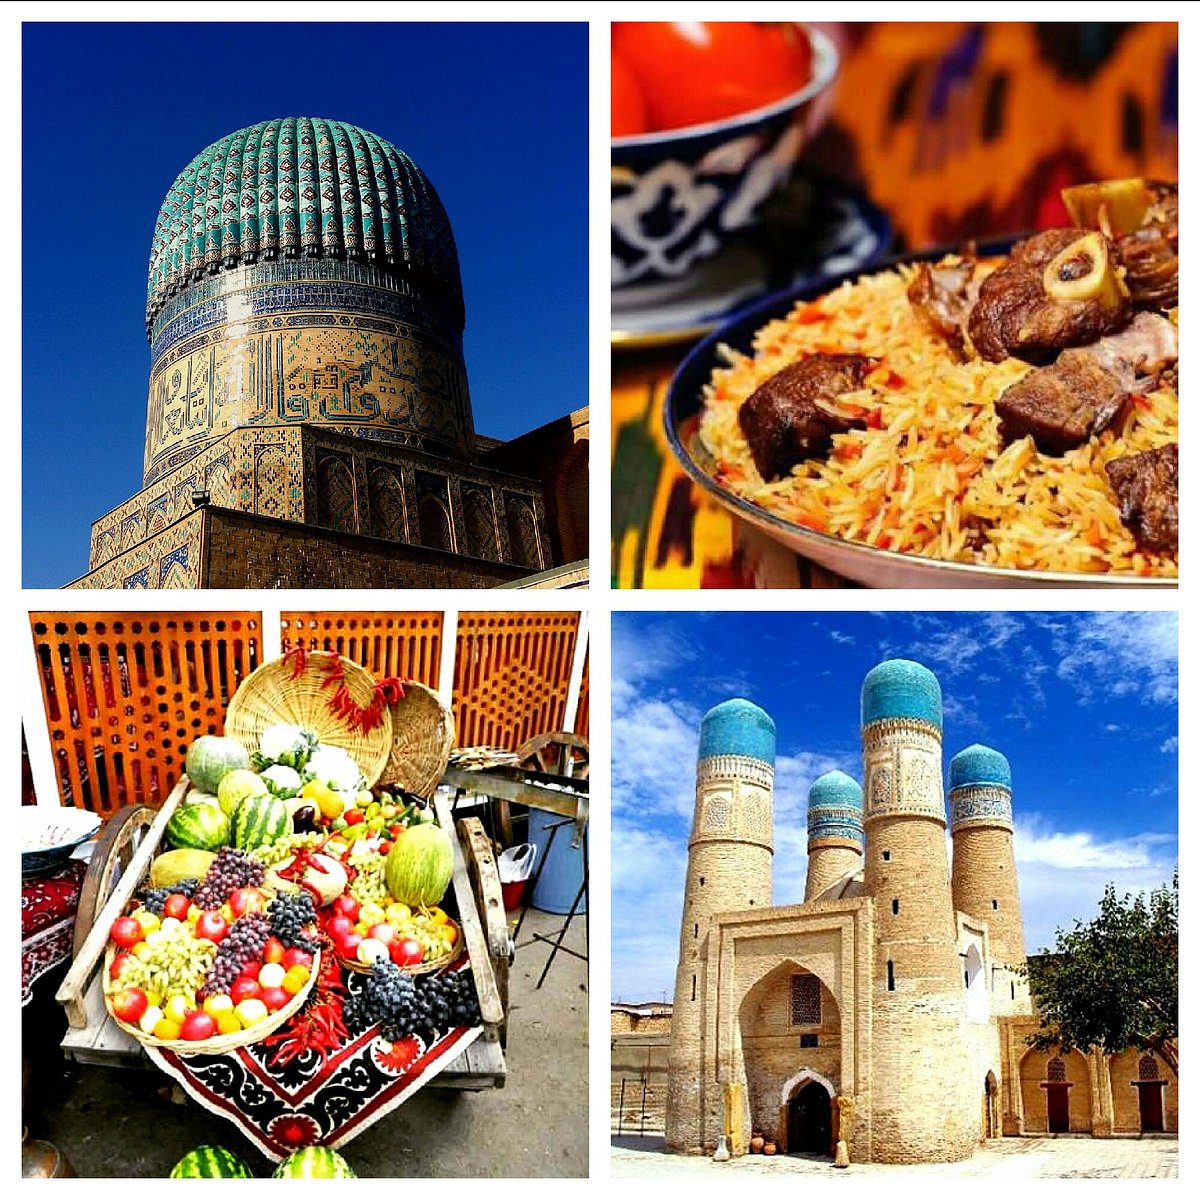 Анур Тур, Ташкент: лучшие советы перед посещением - Tripadvisor